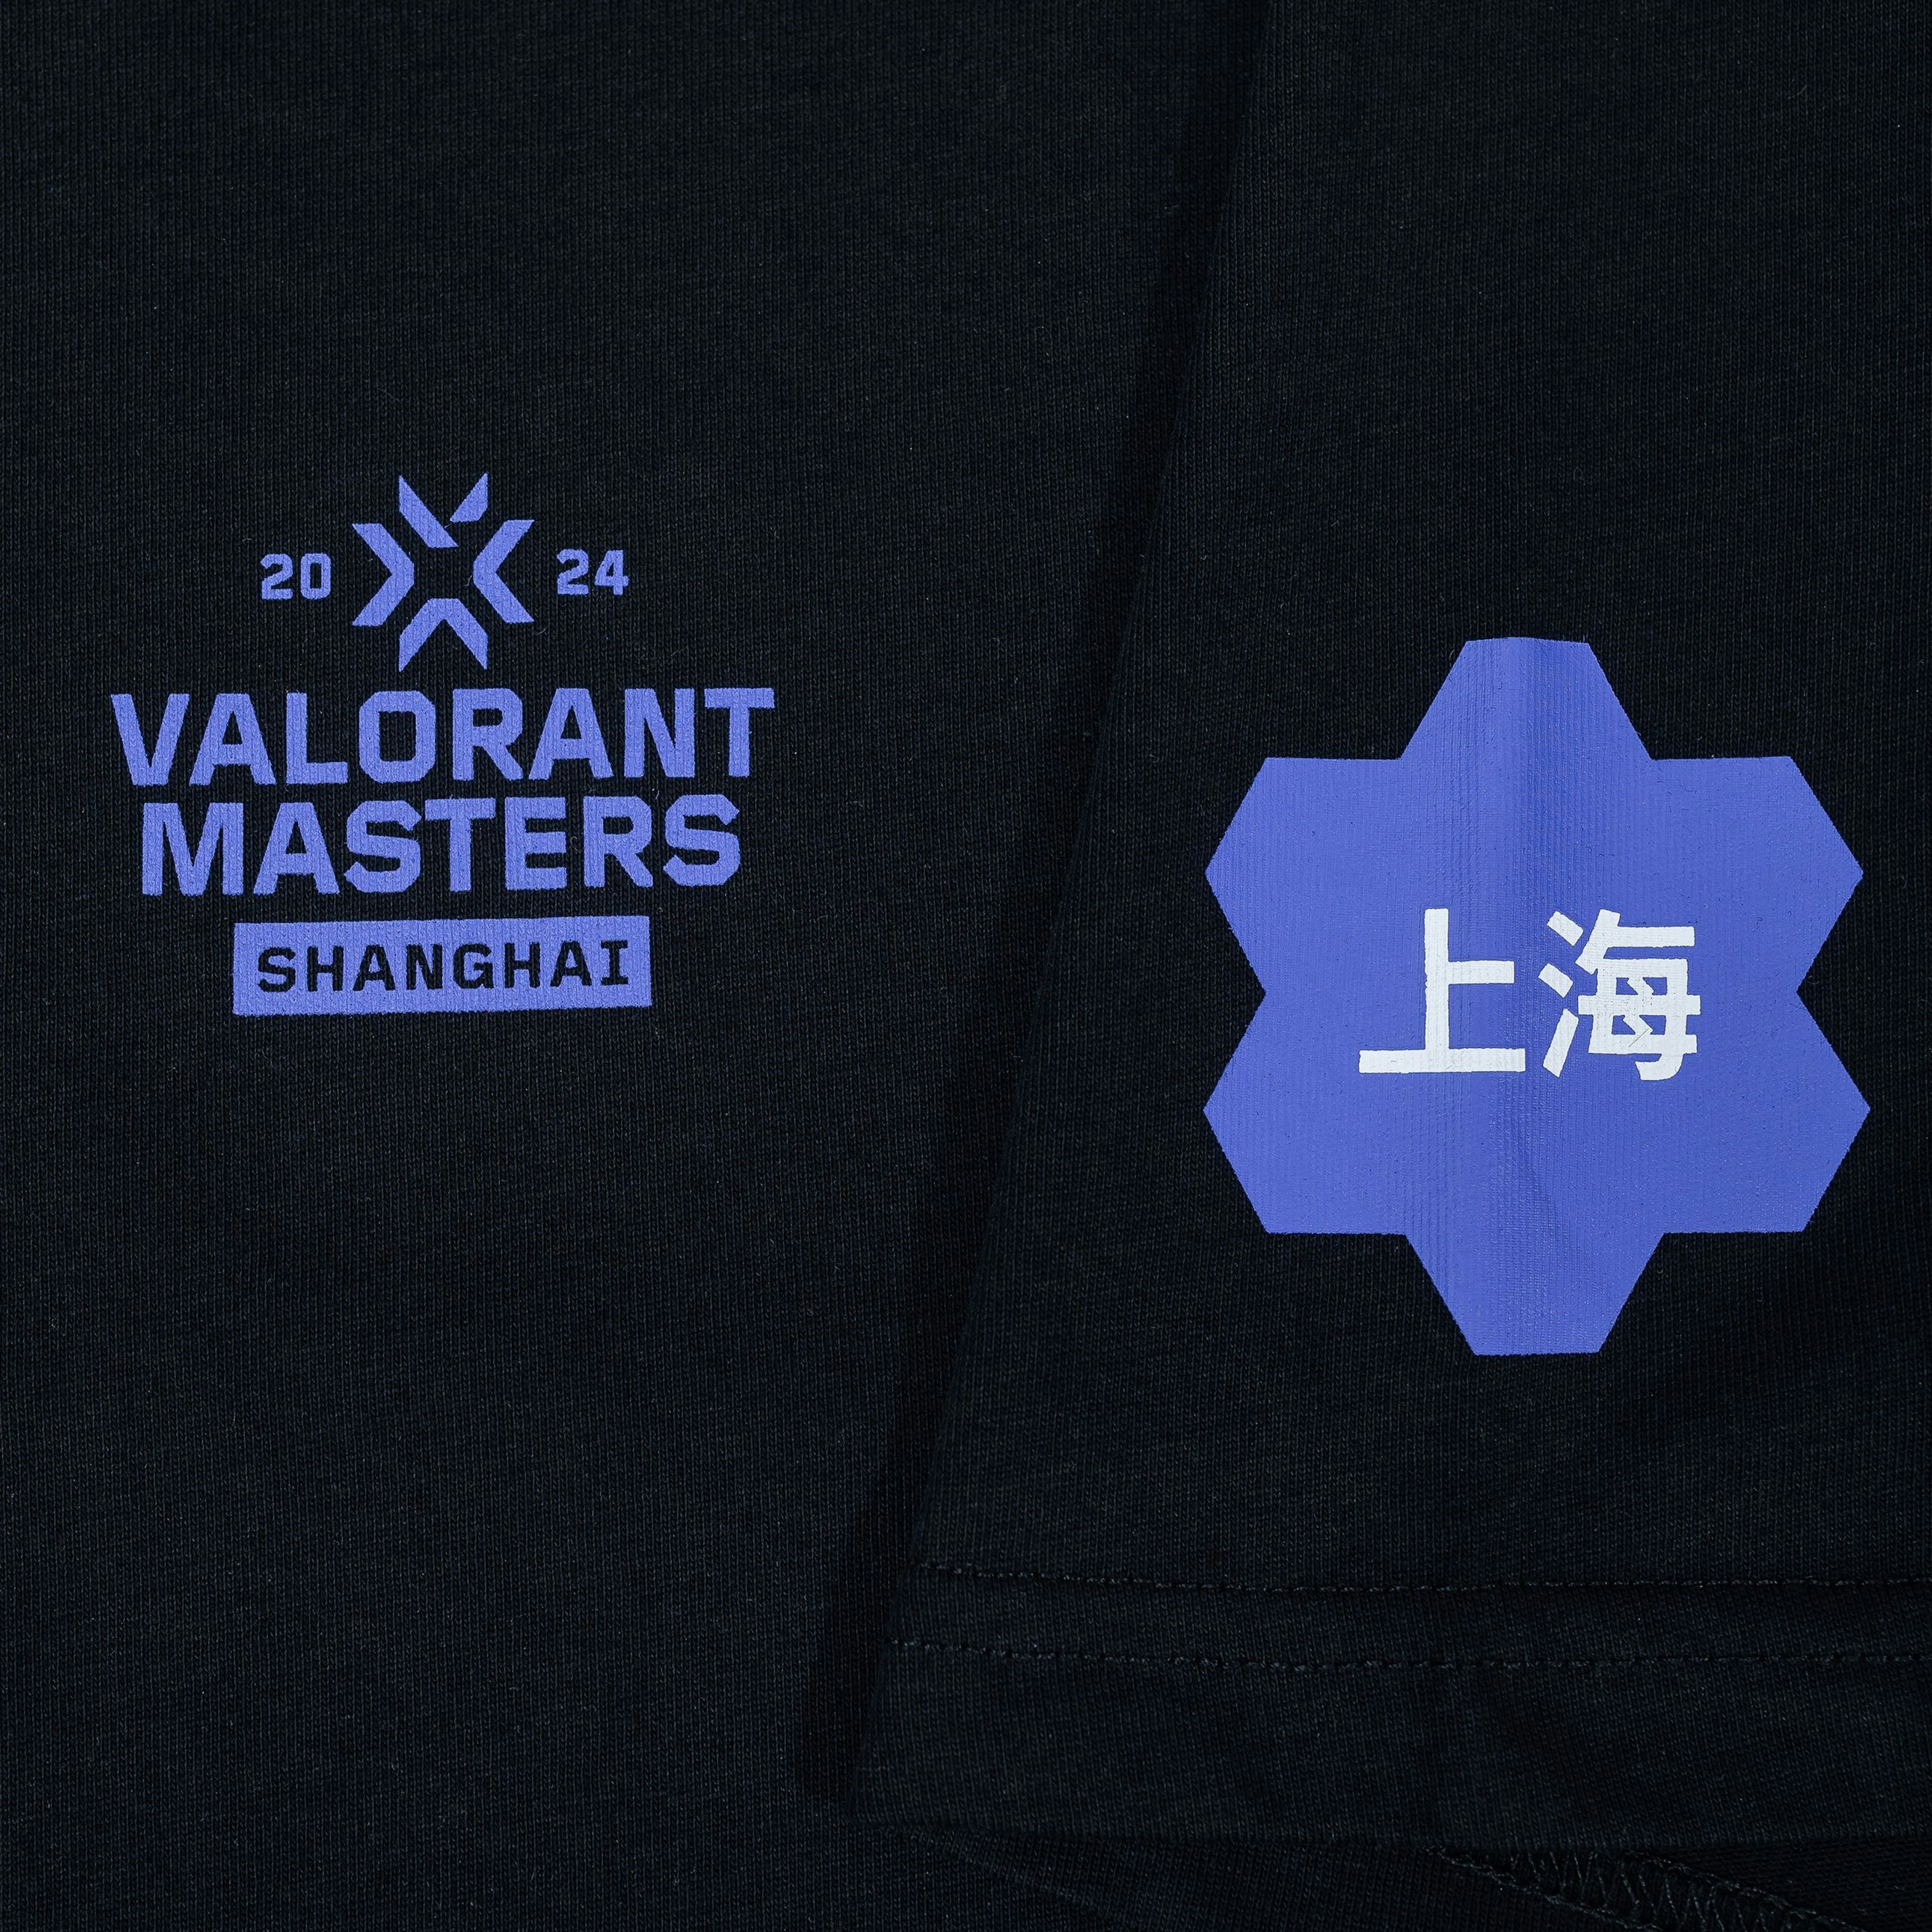 VALORANT Masters Shanghai 24 // Thrill Unleashed Tee